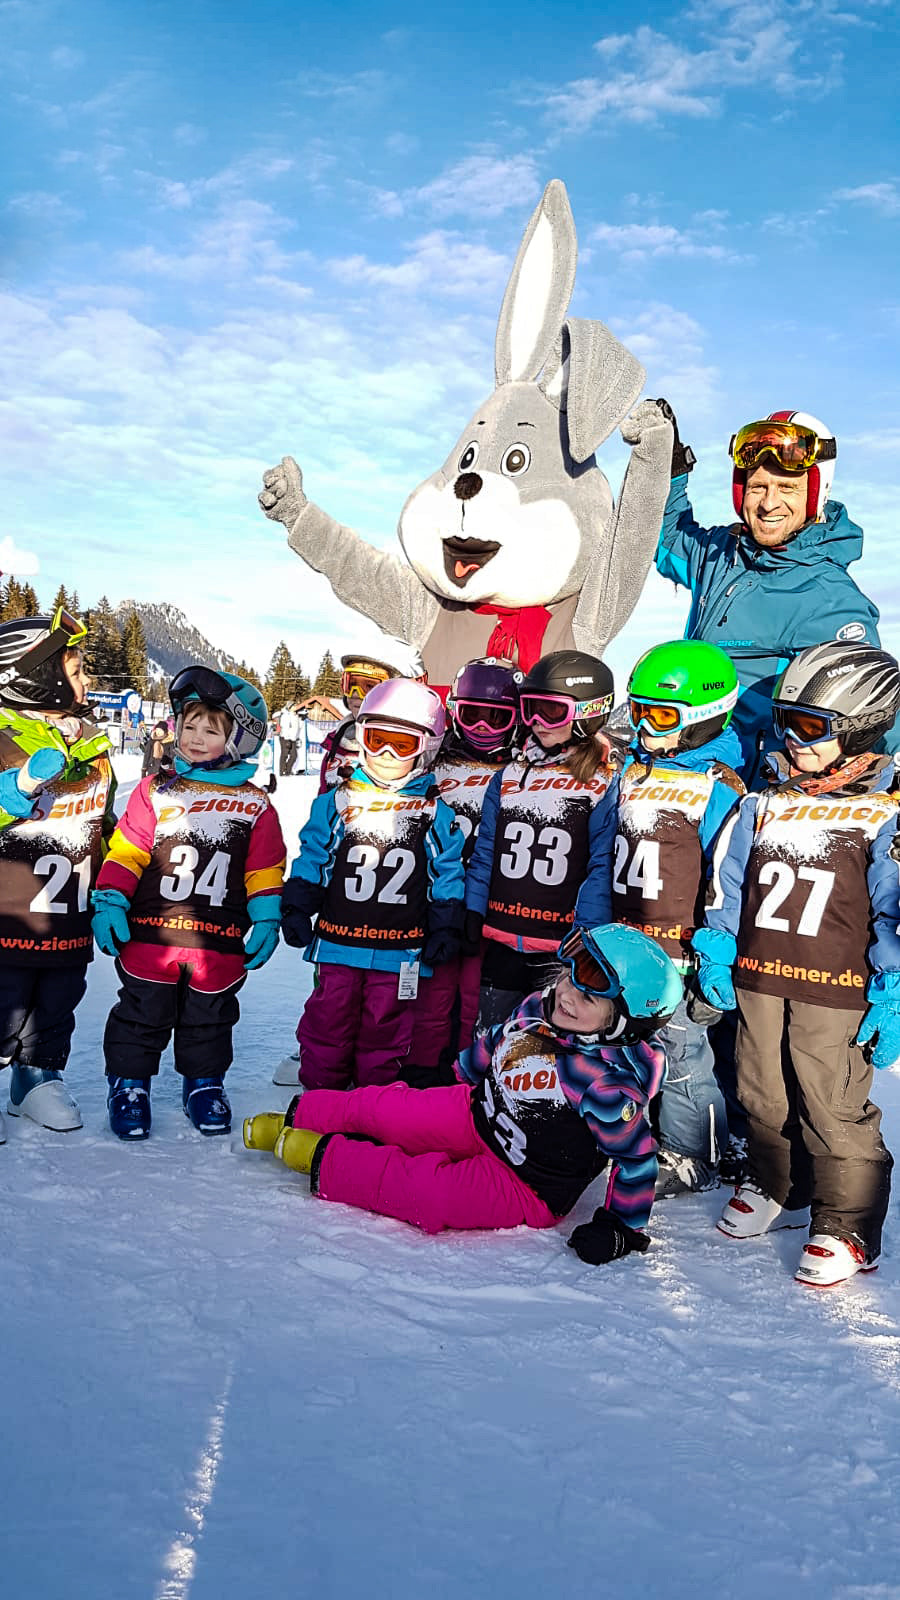 Ski course for children